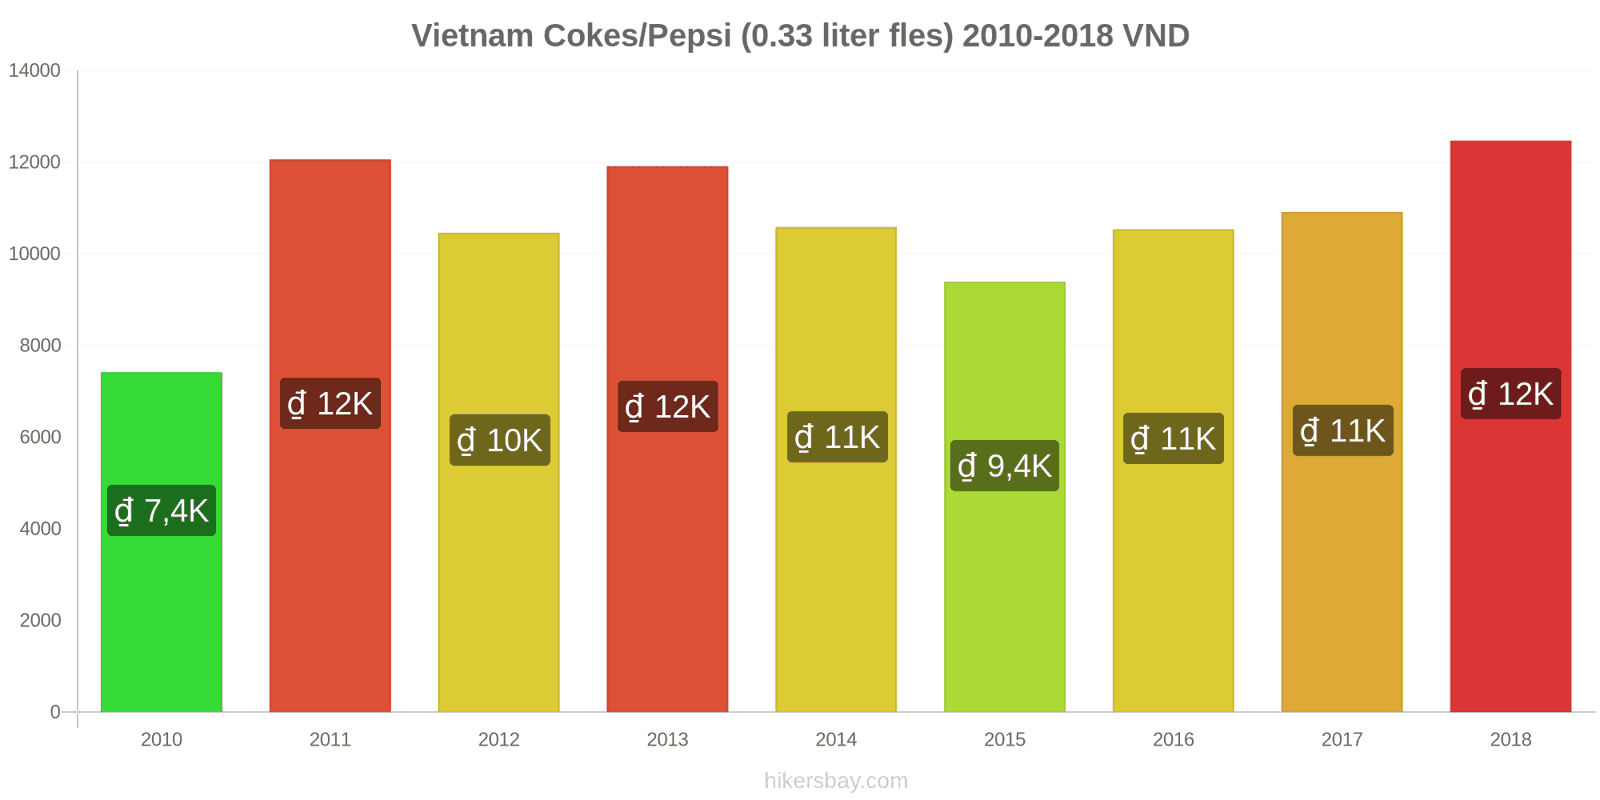 Vietnam prijswijzigingen Coca-Cola/Pepsi (0.33 liter fles) hikersbay.com